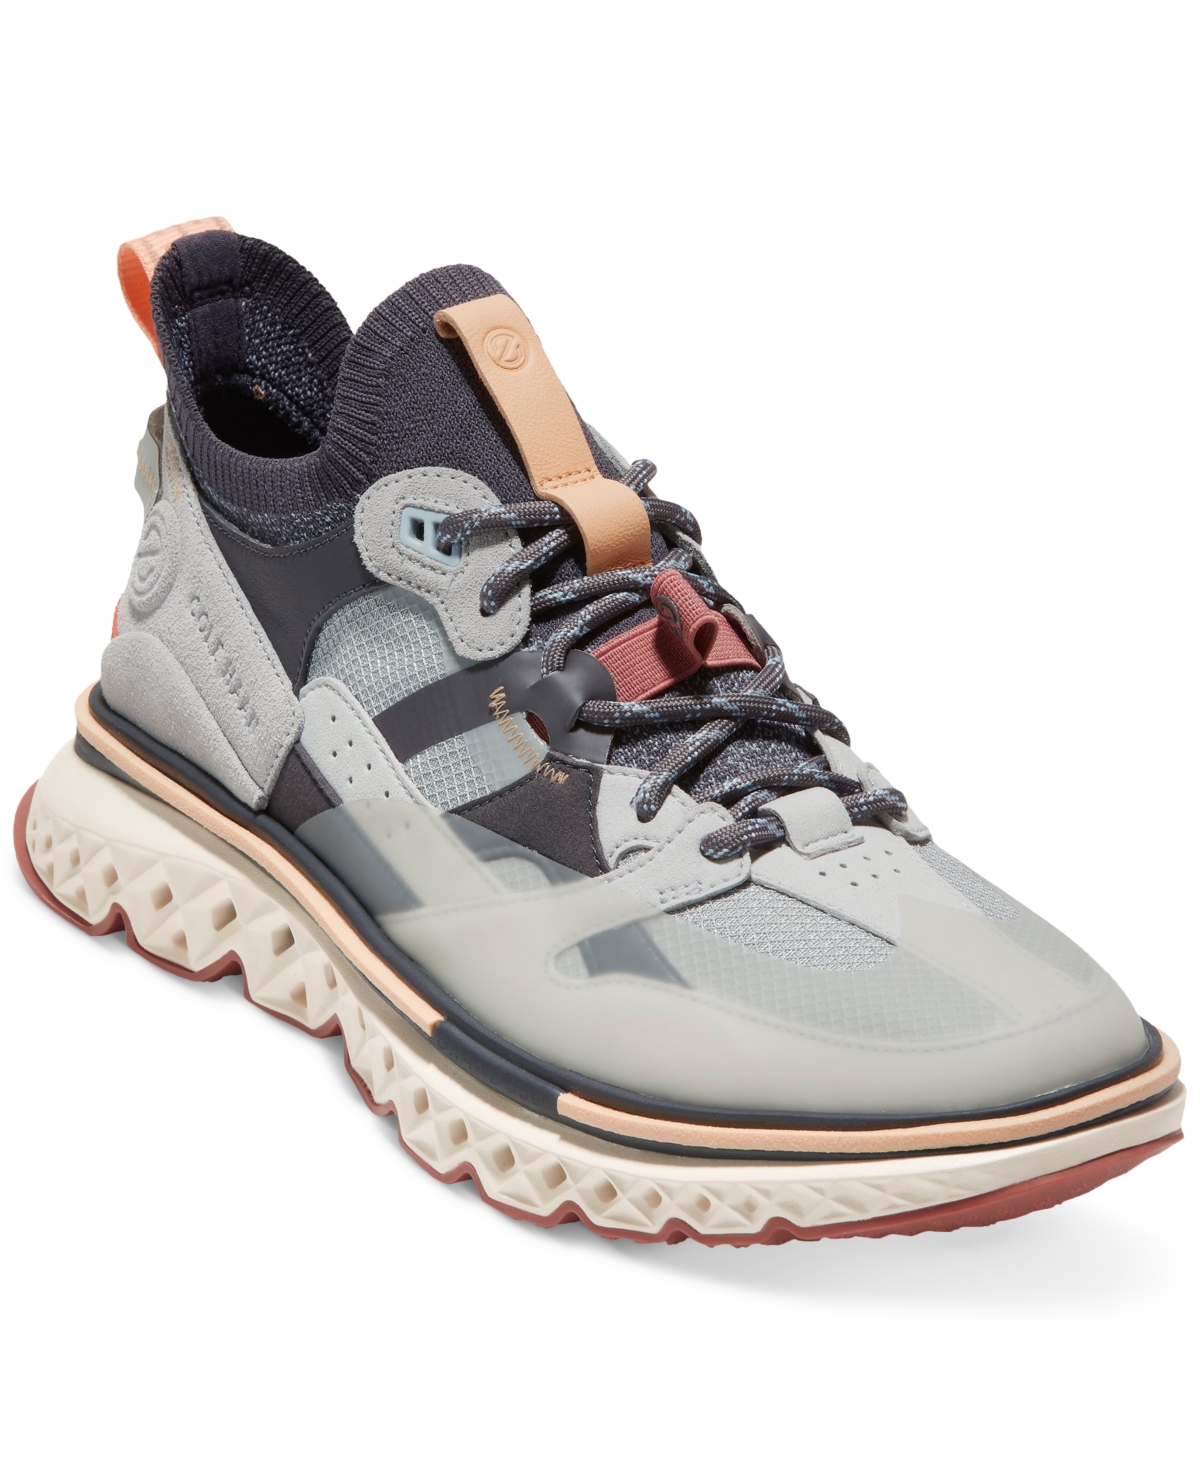 Cole Haan Men's Grand Crosscourt Wingtip Sneaker Shoes - Macy's